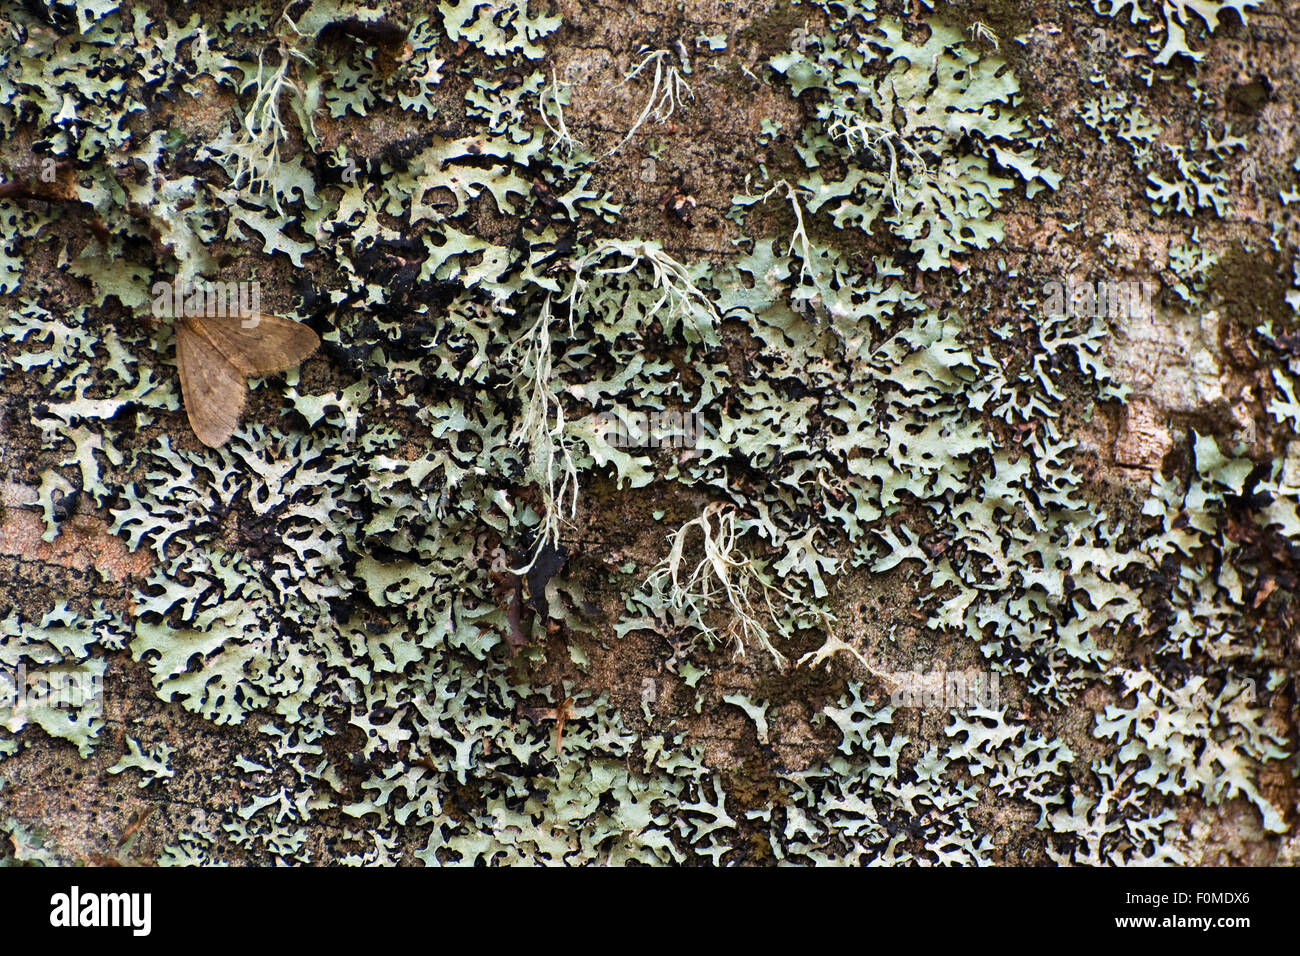 La tignola e licheni sul tronco di albero, il Parco Nazionale del Pollino, Basilicata, Italia, novembre 2008 Foto Stock